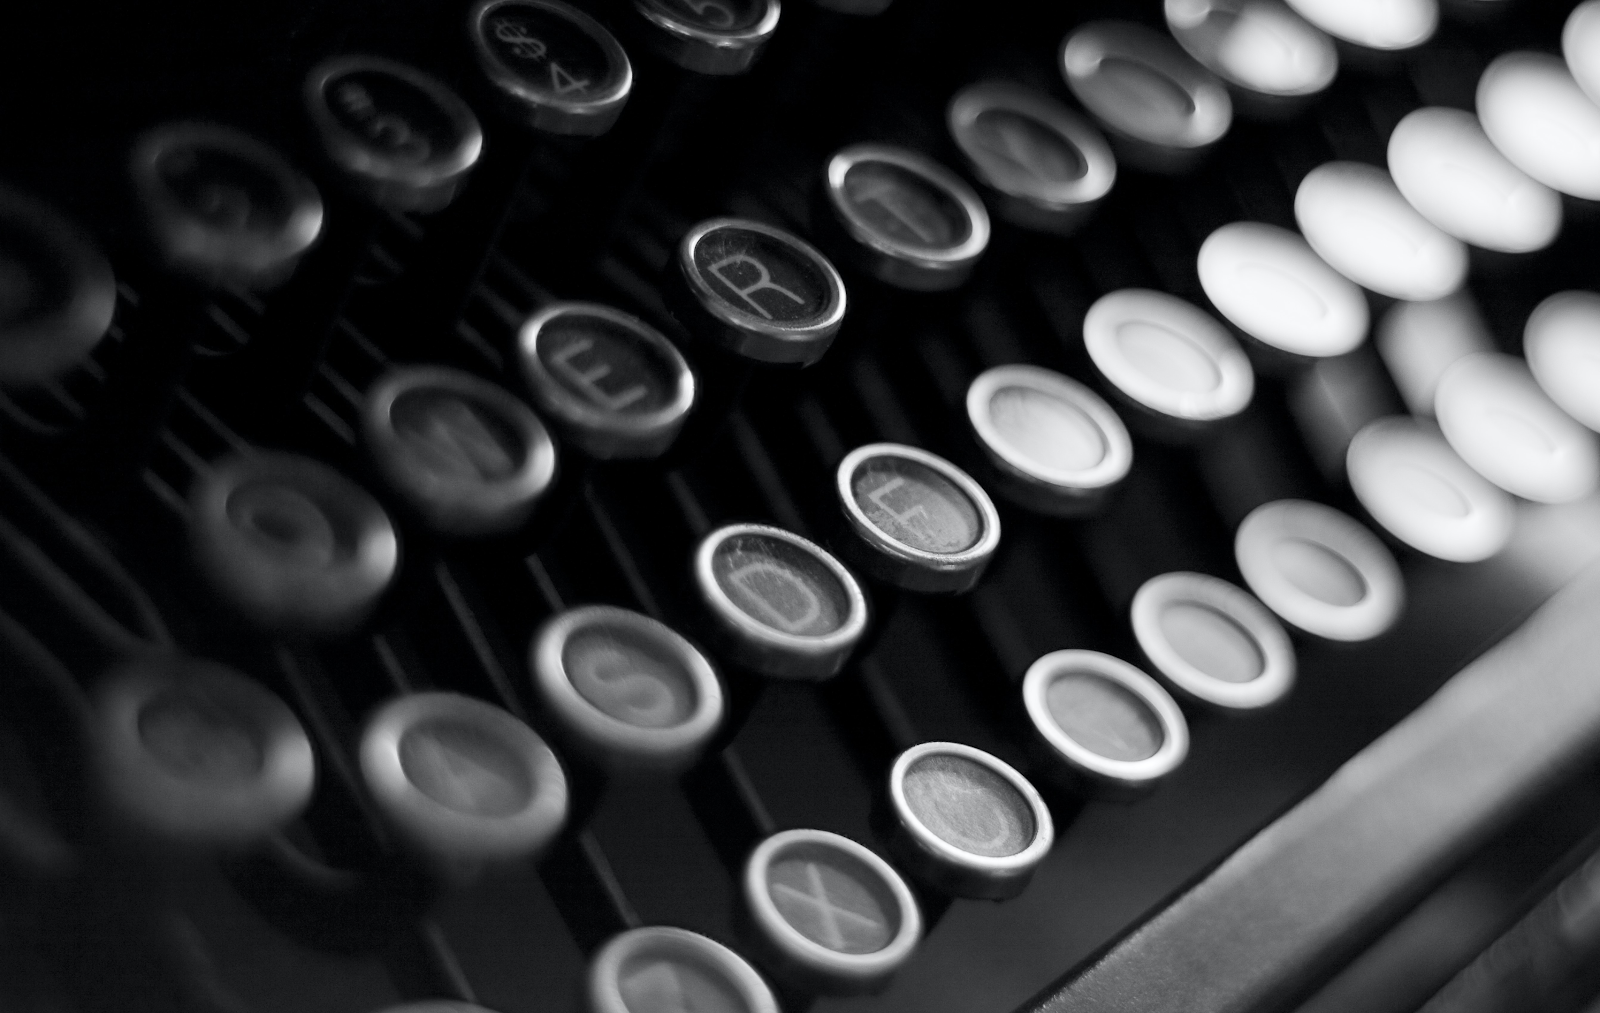 An image of typewriter keys.